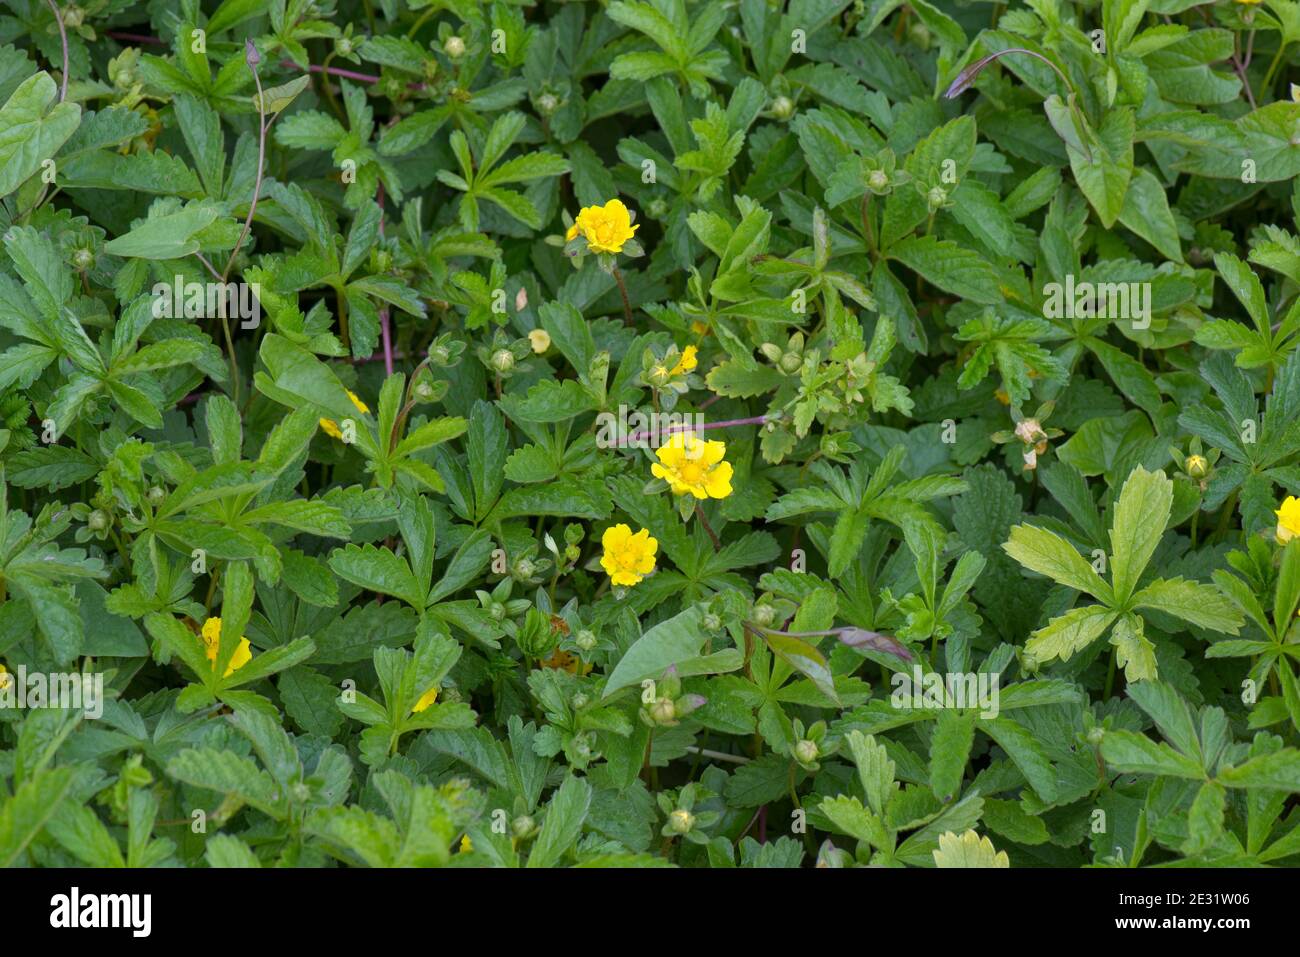 Cinefrolo strisciante (Potentilla reptans) stolonifera che sparge piante selvatiche con fiori gialli, Berkshire, giugno Foto Stock